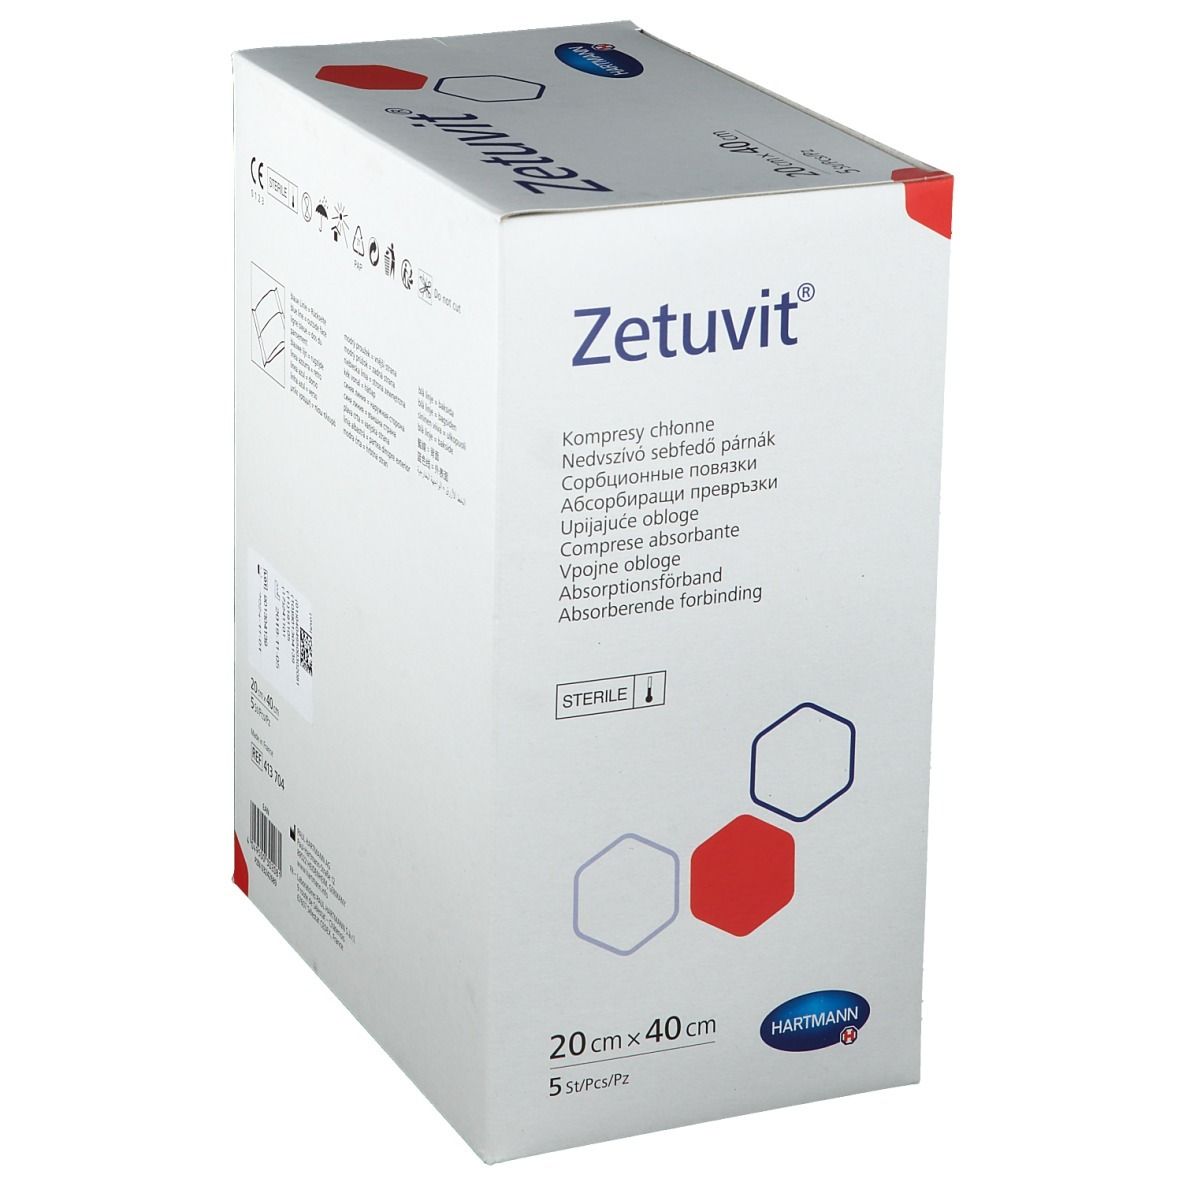 Zetuvit® Saugkompresse steril 20 x 40 cm